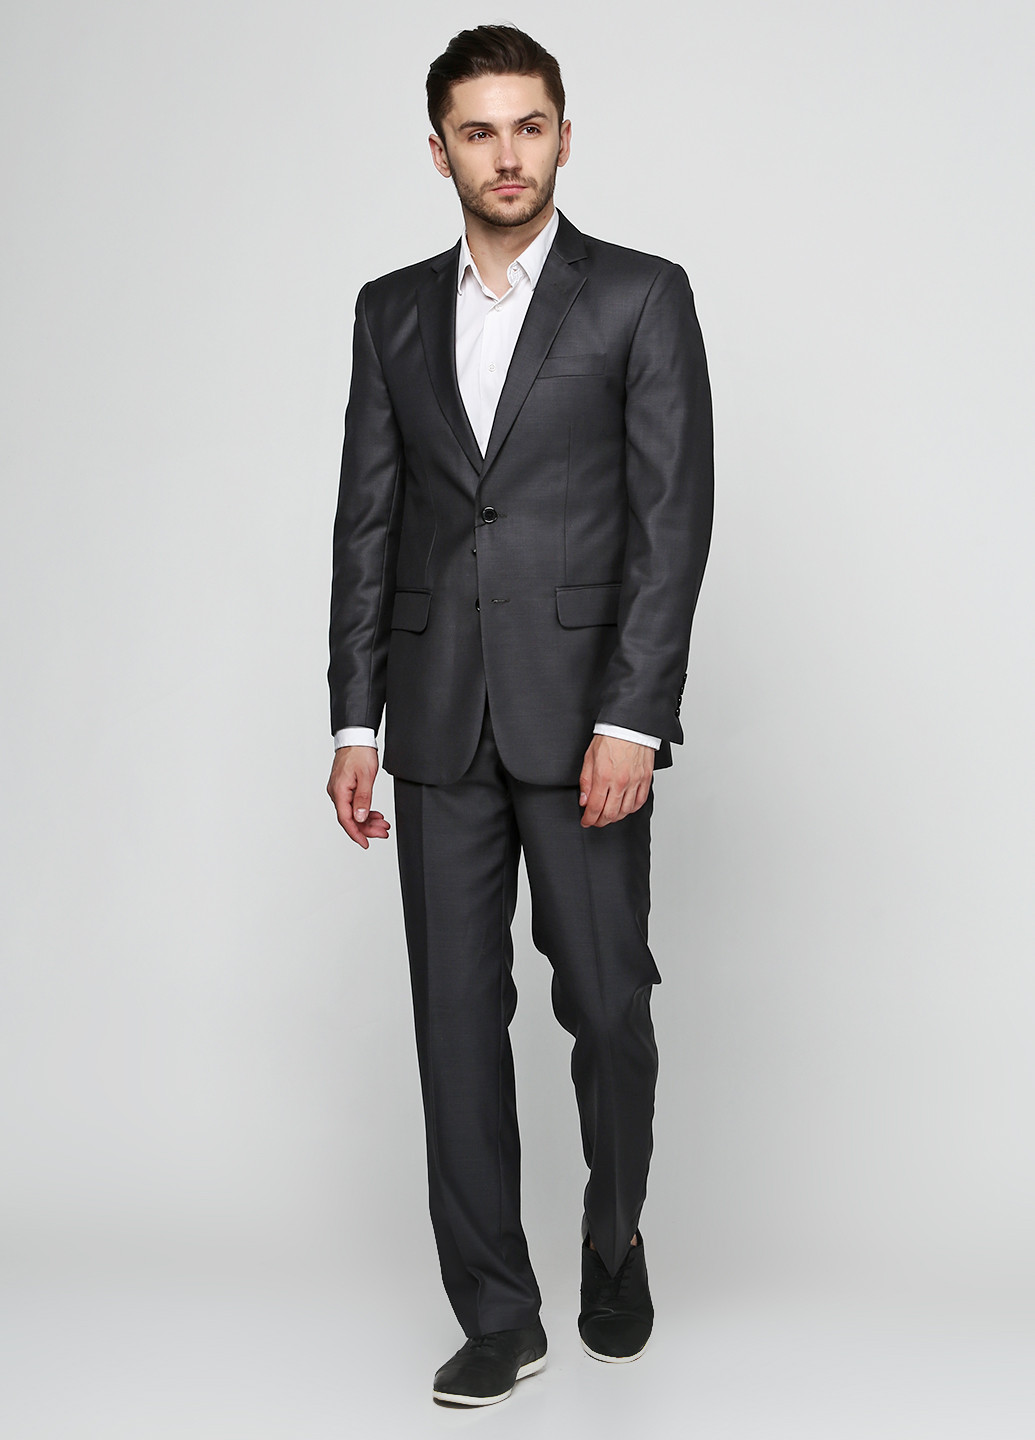 Серый демисезонный костюм (пиджак, брюки) брючный Gentle Man